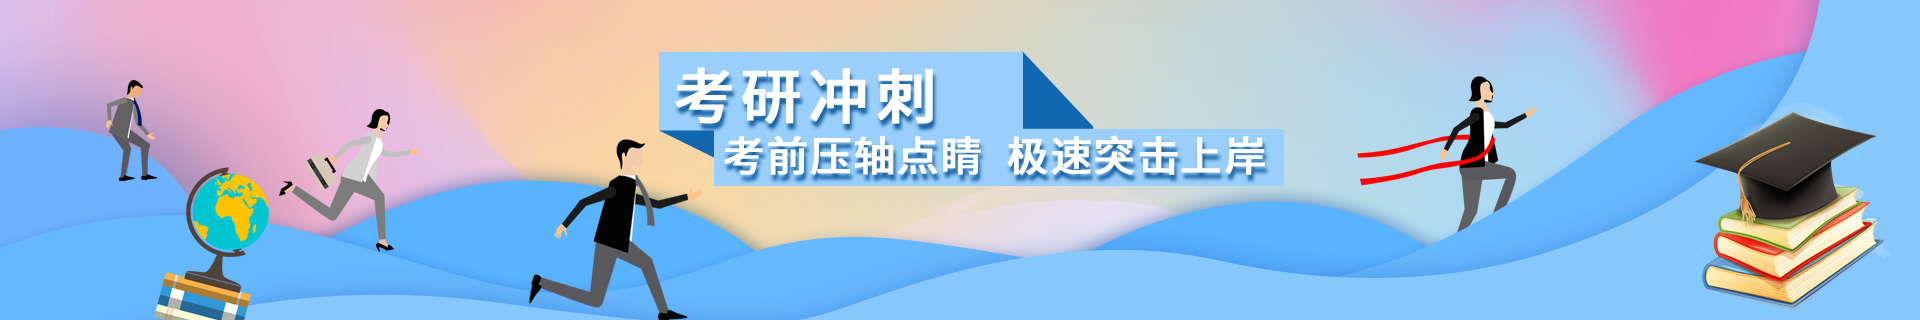 北京昌平跨考教育培训机构